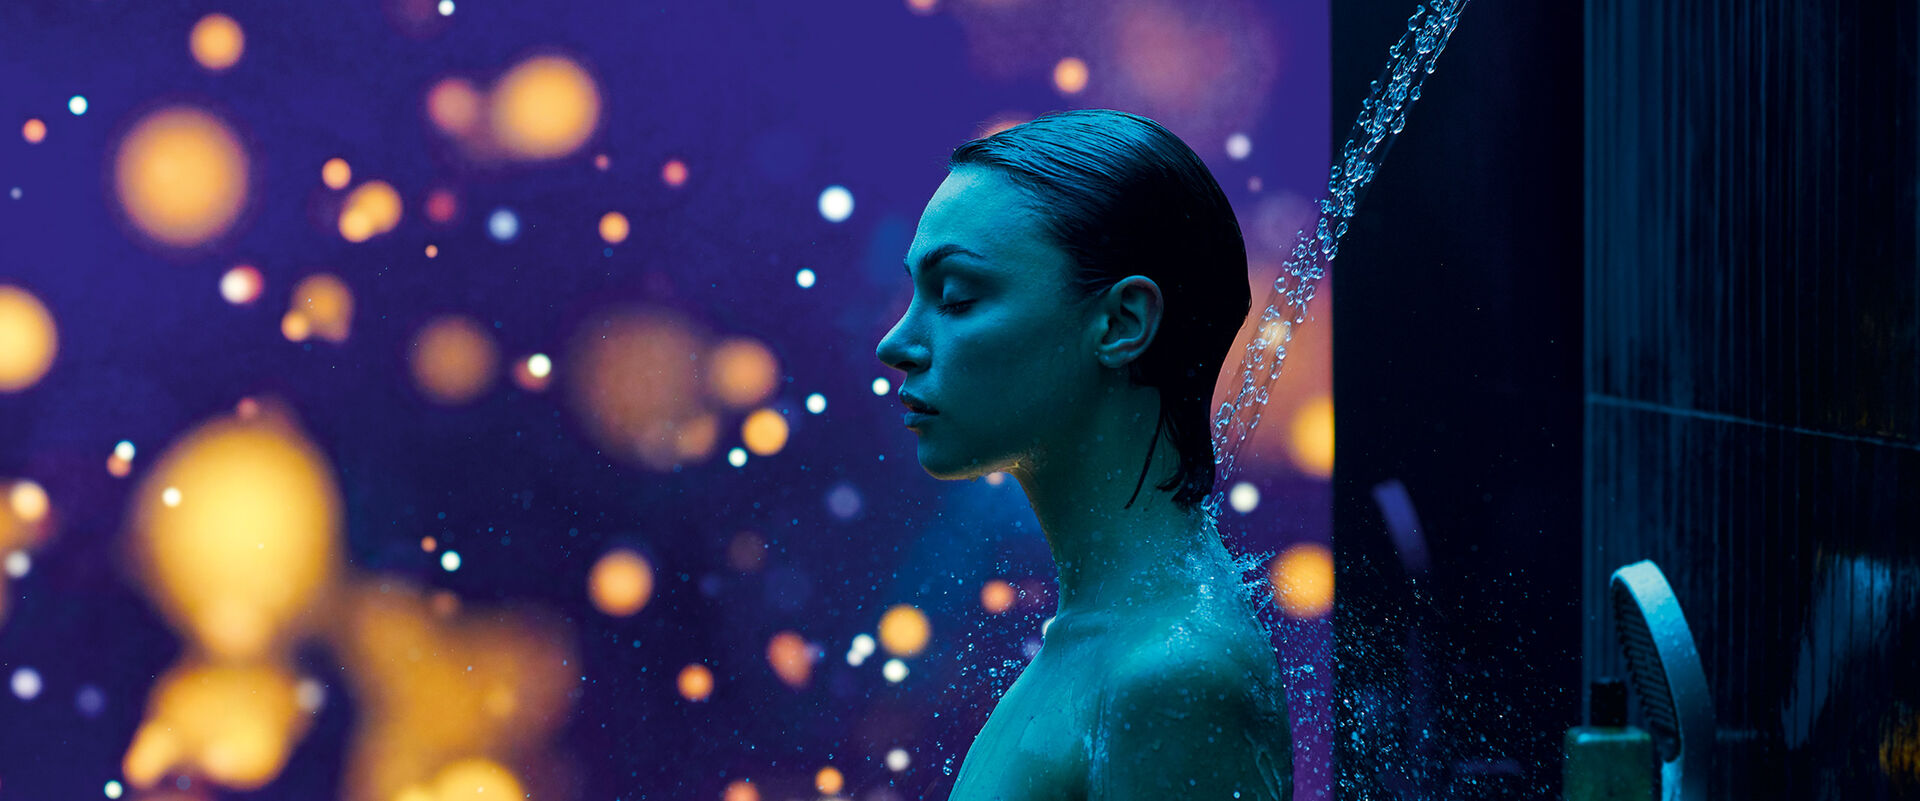 Oberkörper einer Frau inmitten eines mit RainTunes ausgestatteten Duschbereichs. Im Hintergrund leuchtet ein farbiges Bild mit großen, runden Lichtelementen.